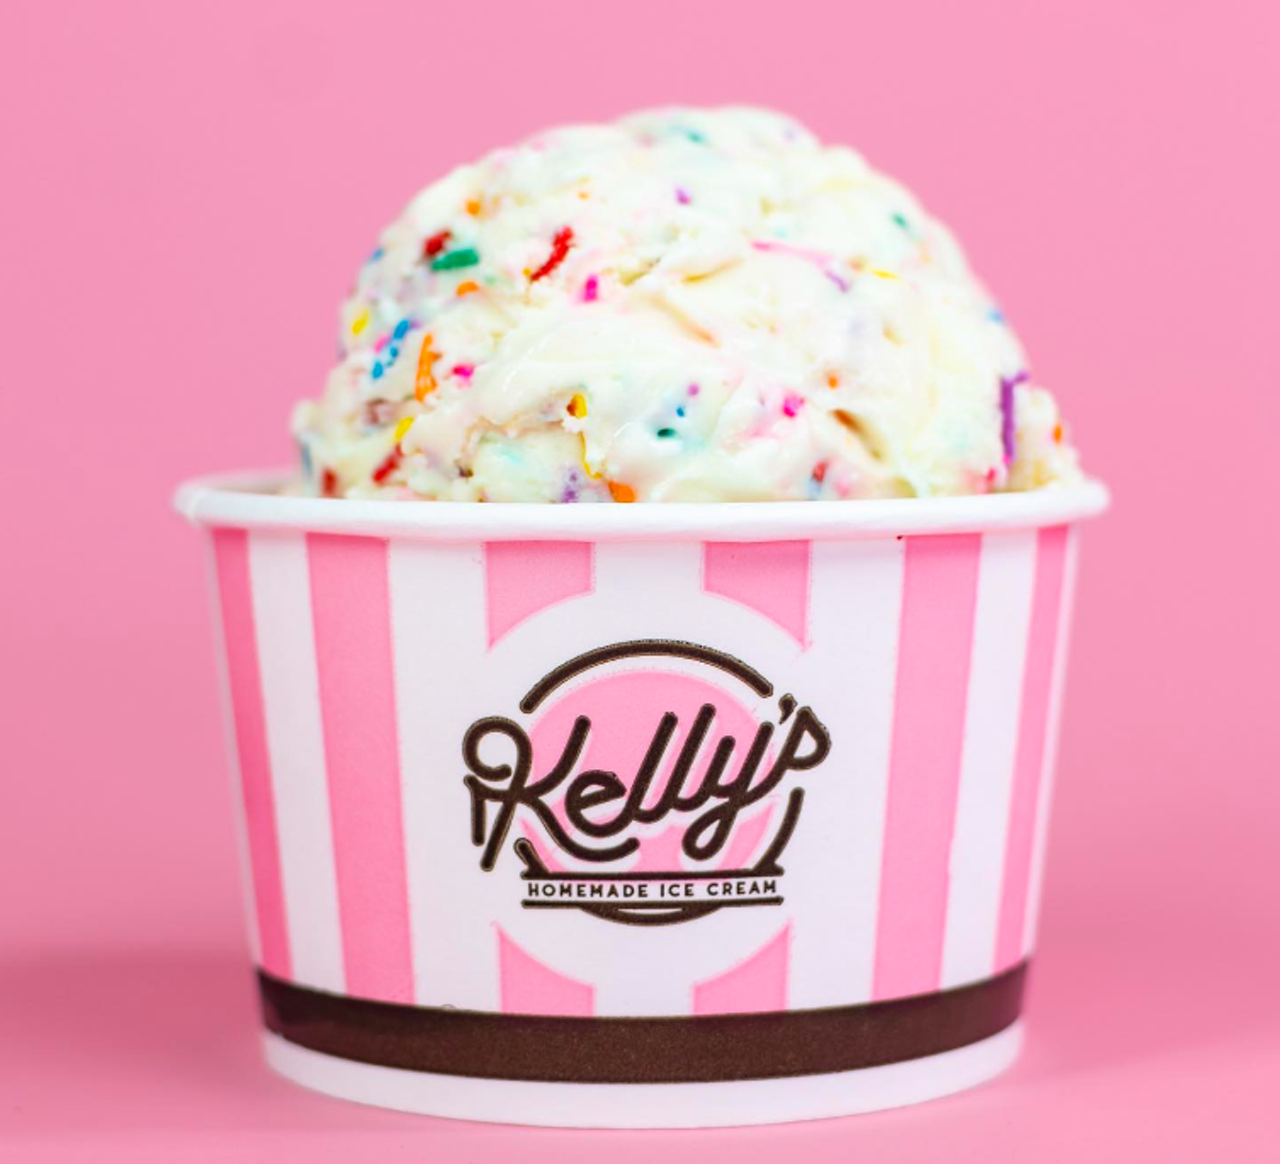 Best Ice Cream
Winner: Kelly’s Homemade Ice Cream
Runners-up: Sampaguita Ice Cream, Jeremiah’s Italian Ice